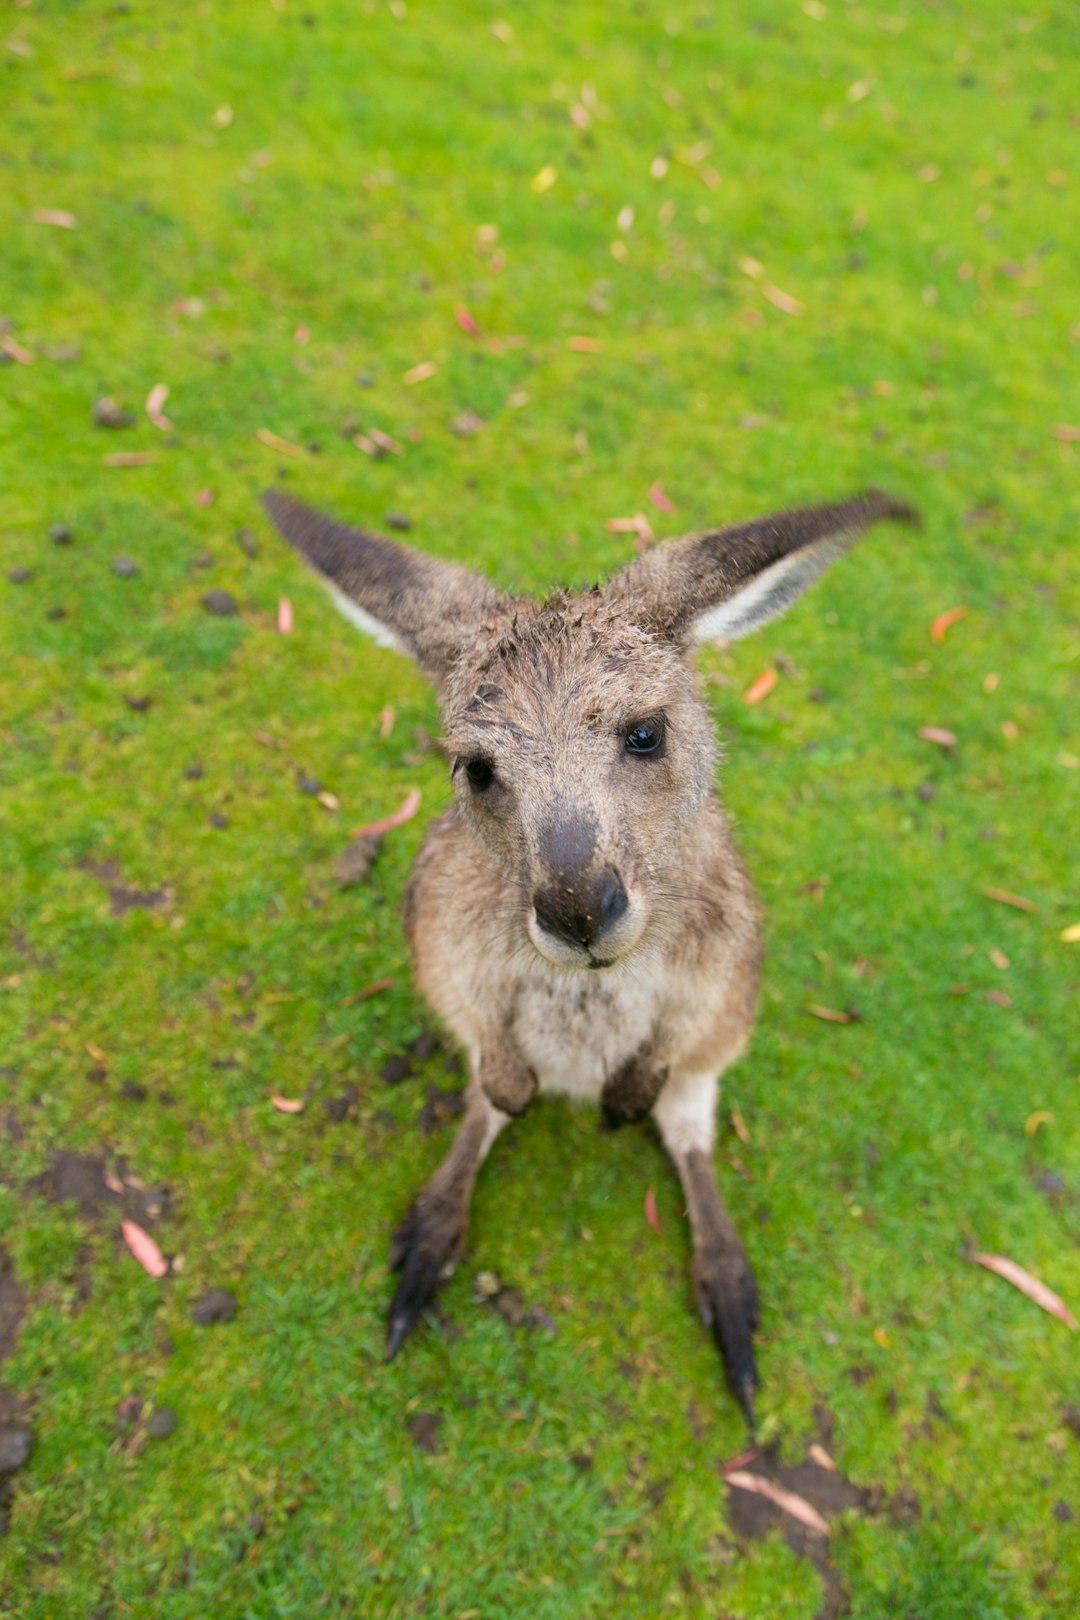 brown kangaroo joey on grass